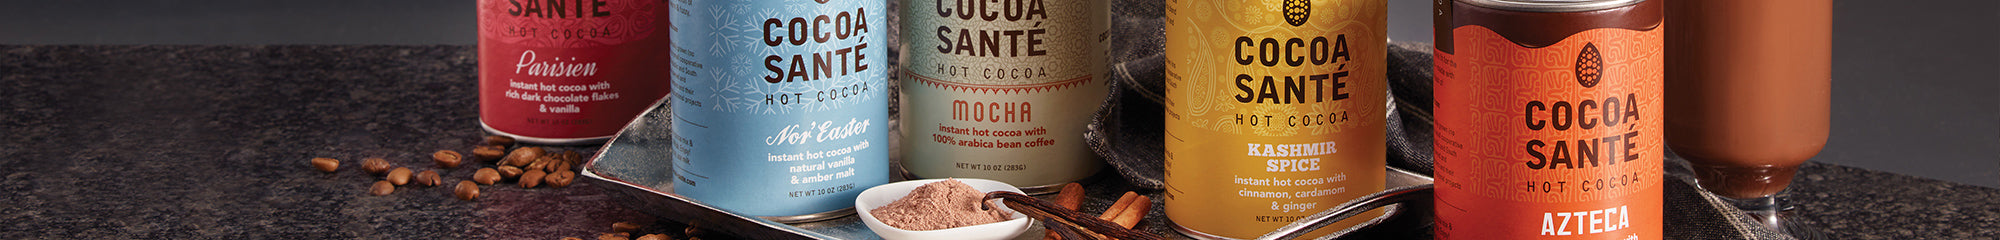 Cocoa Santé